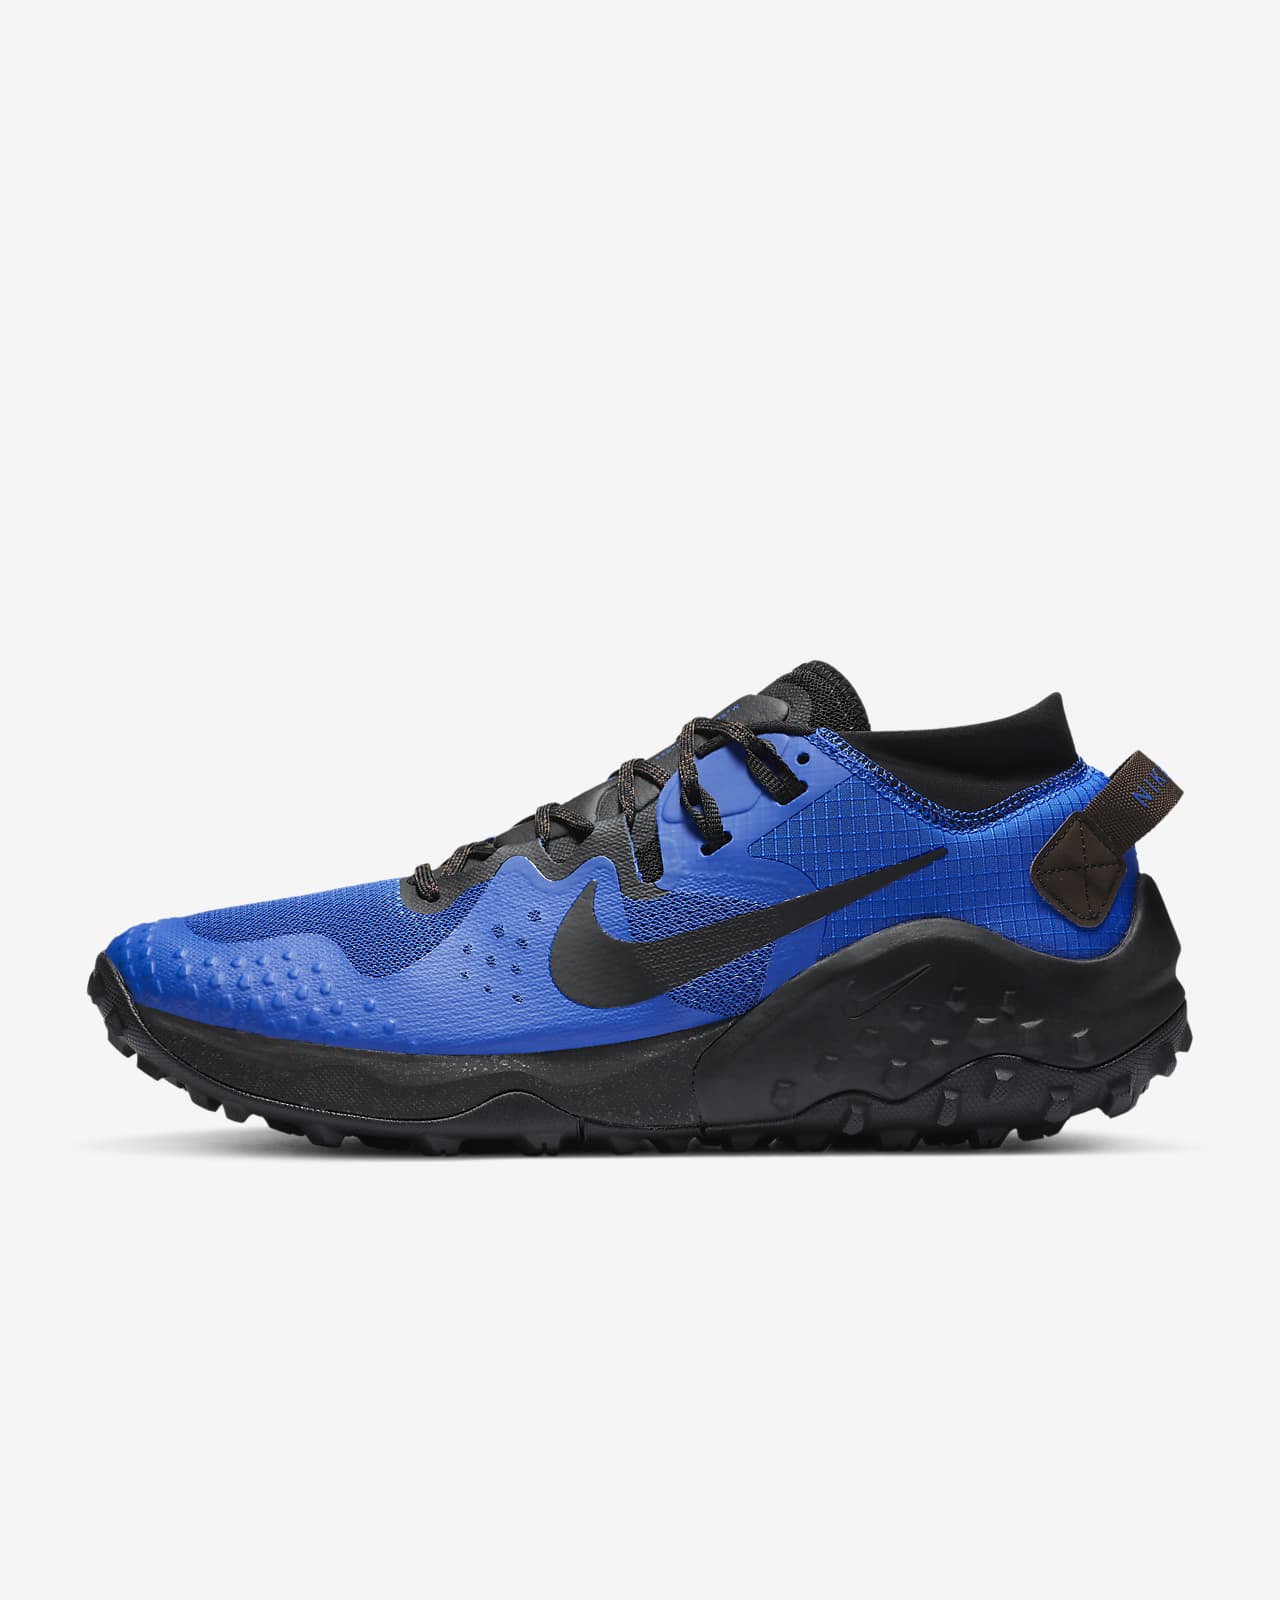 Trail Running Shoe. Nike MA